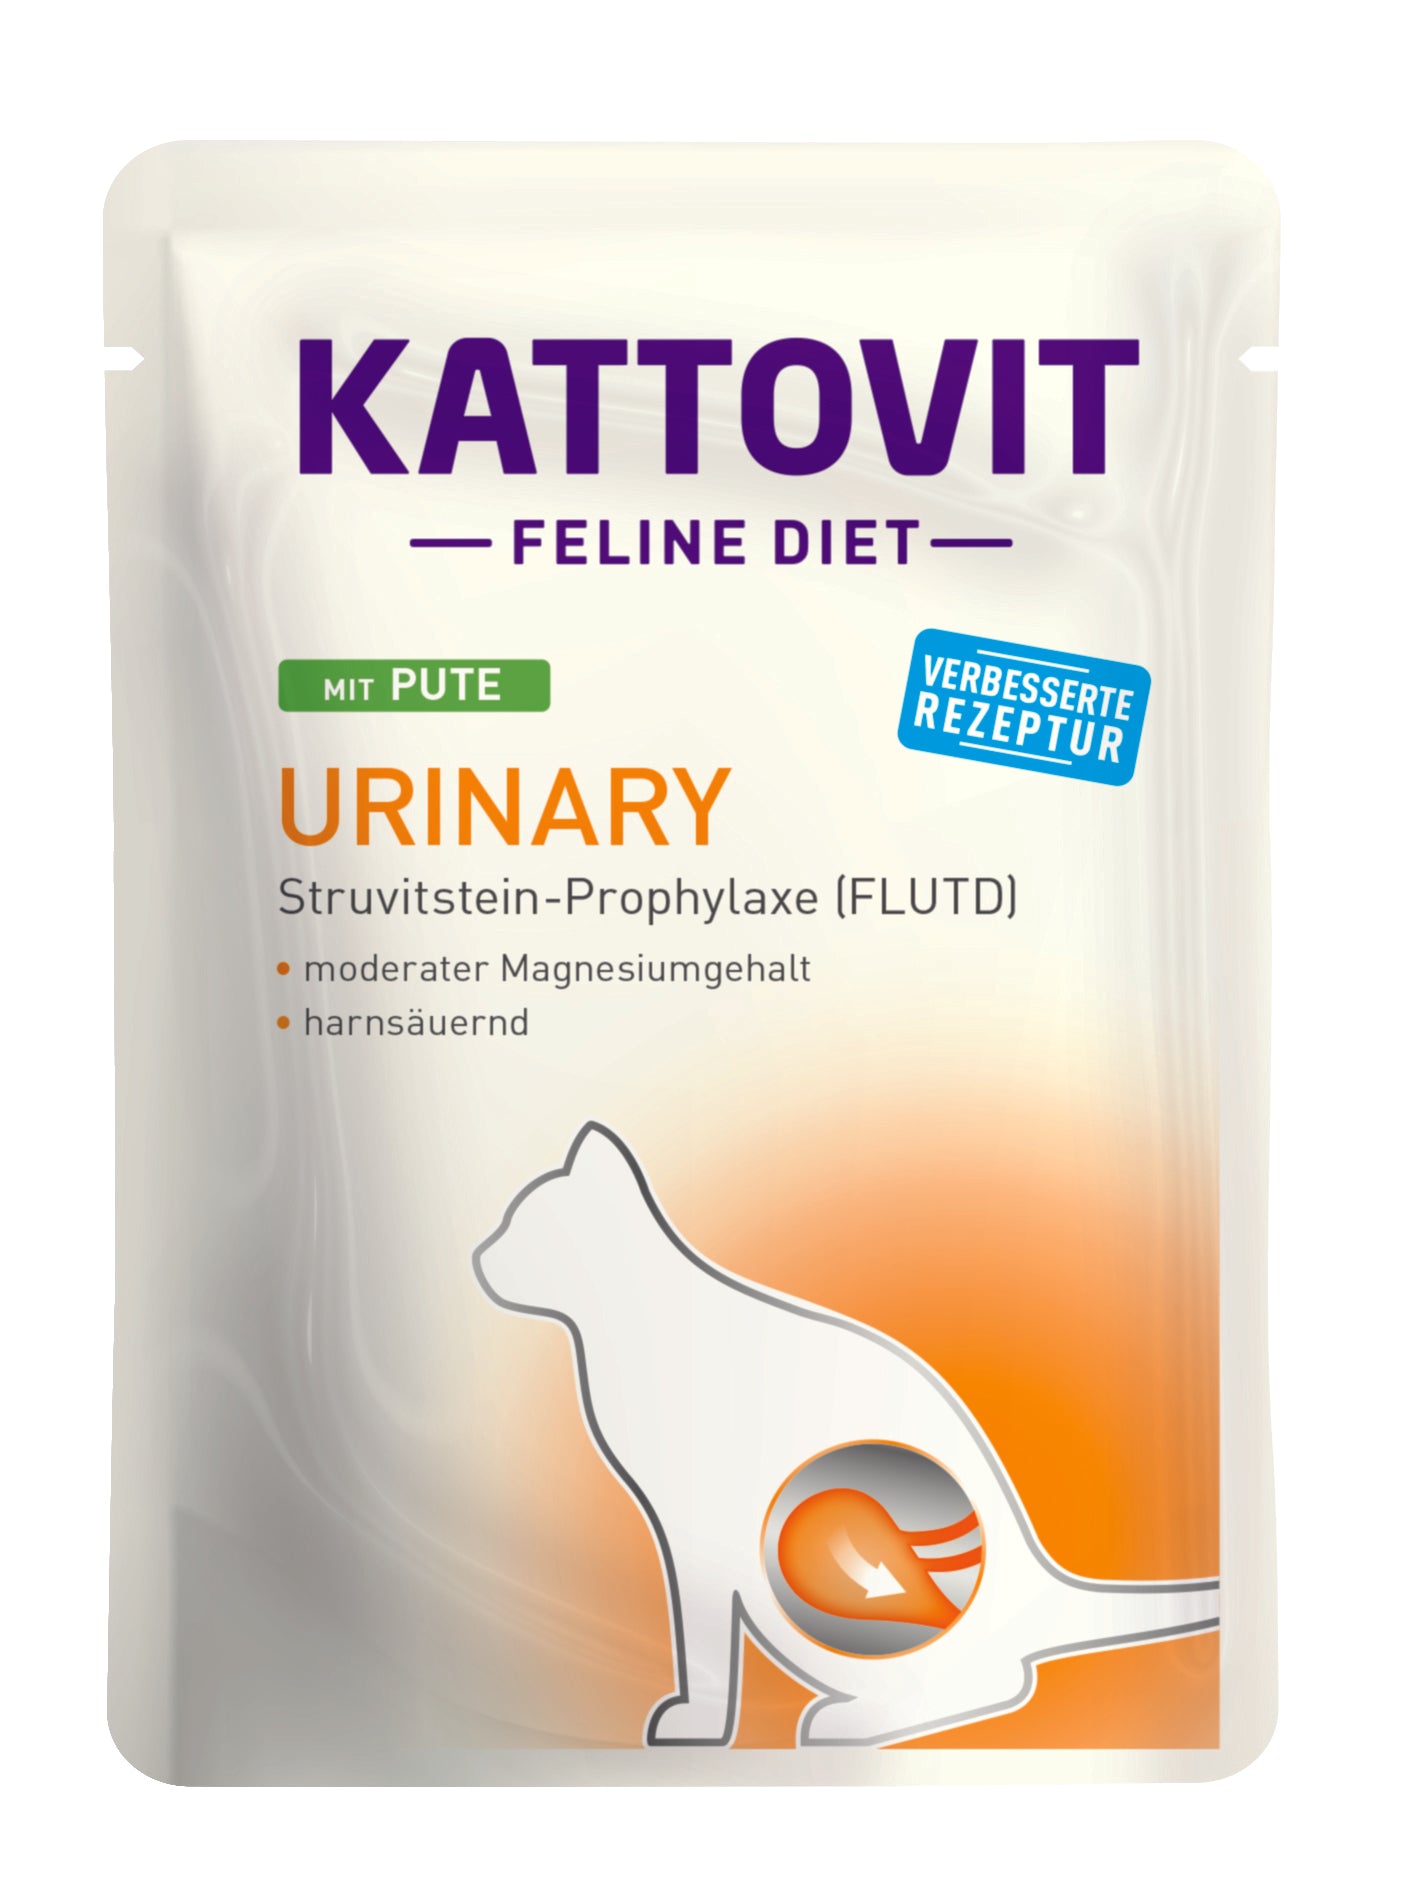 Artikel mit dem Namen Kattovit Feline Diet Urinary mit Pute im Shop von zoo.de , dem Onlineshop für nachhaltiges Hundefutter und Katzenfutter.